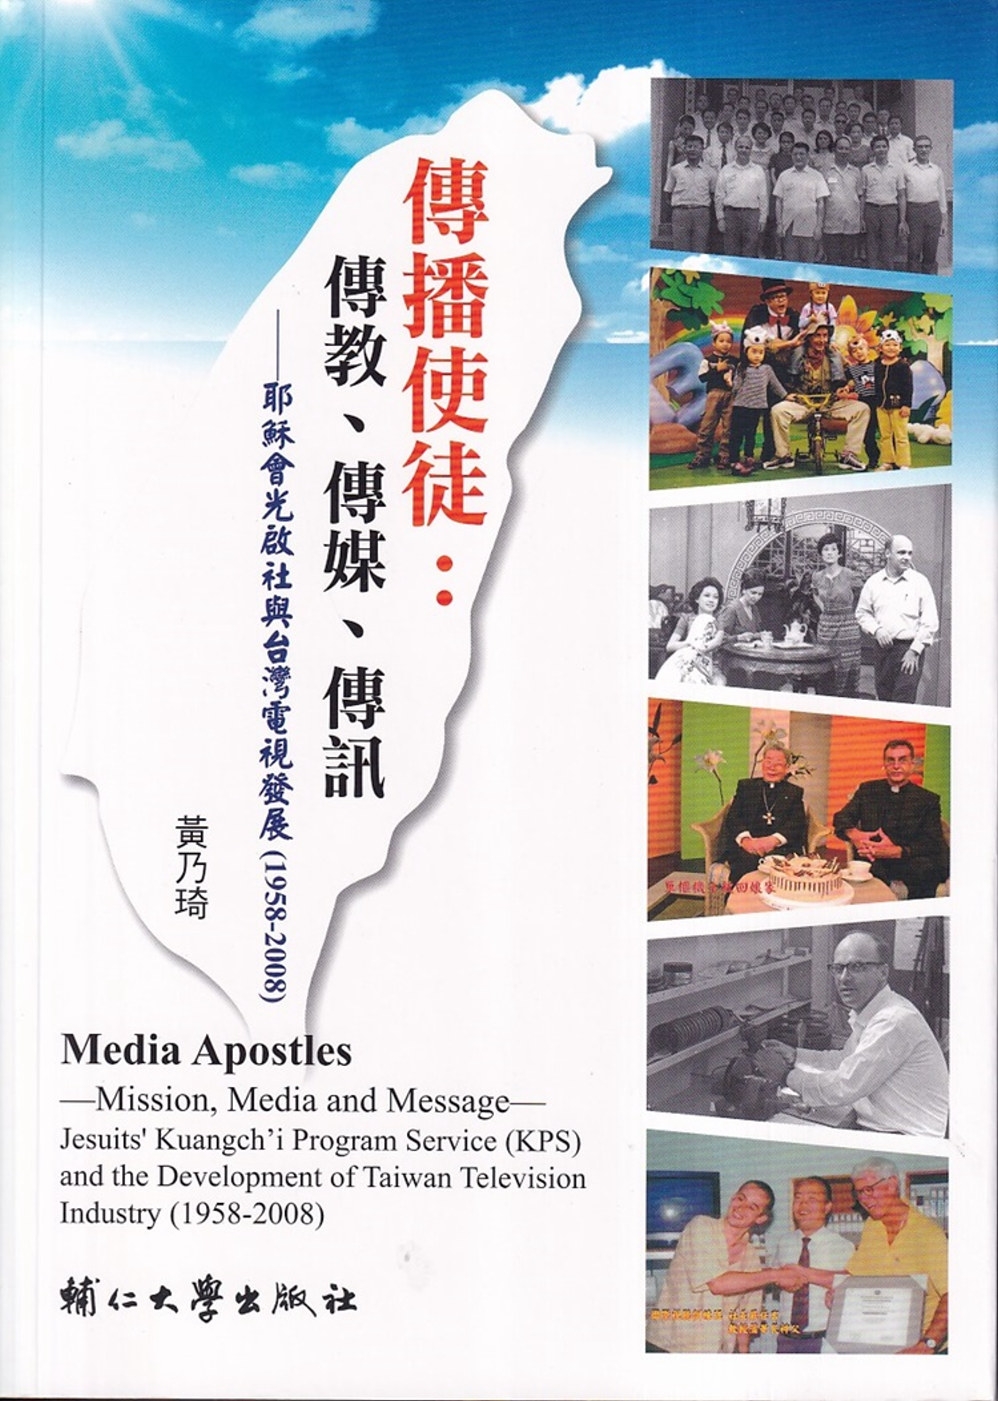 傳播使徒：傳教、傳媒與傳訊-耶穌會光啟社與台灣電視發展（1958-2008）